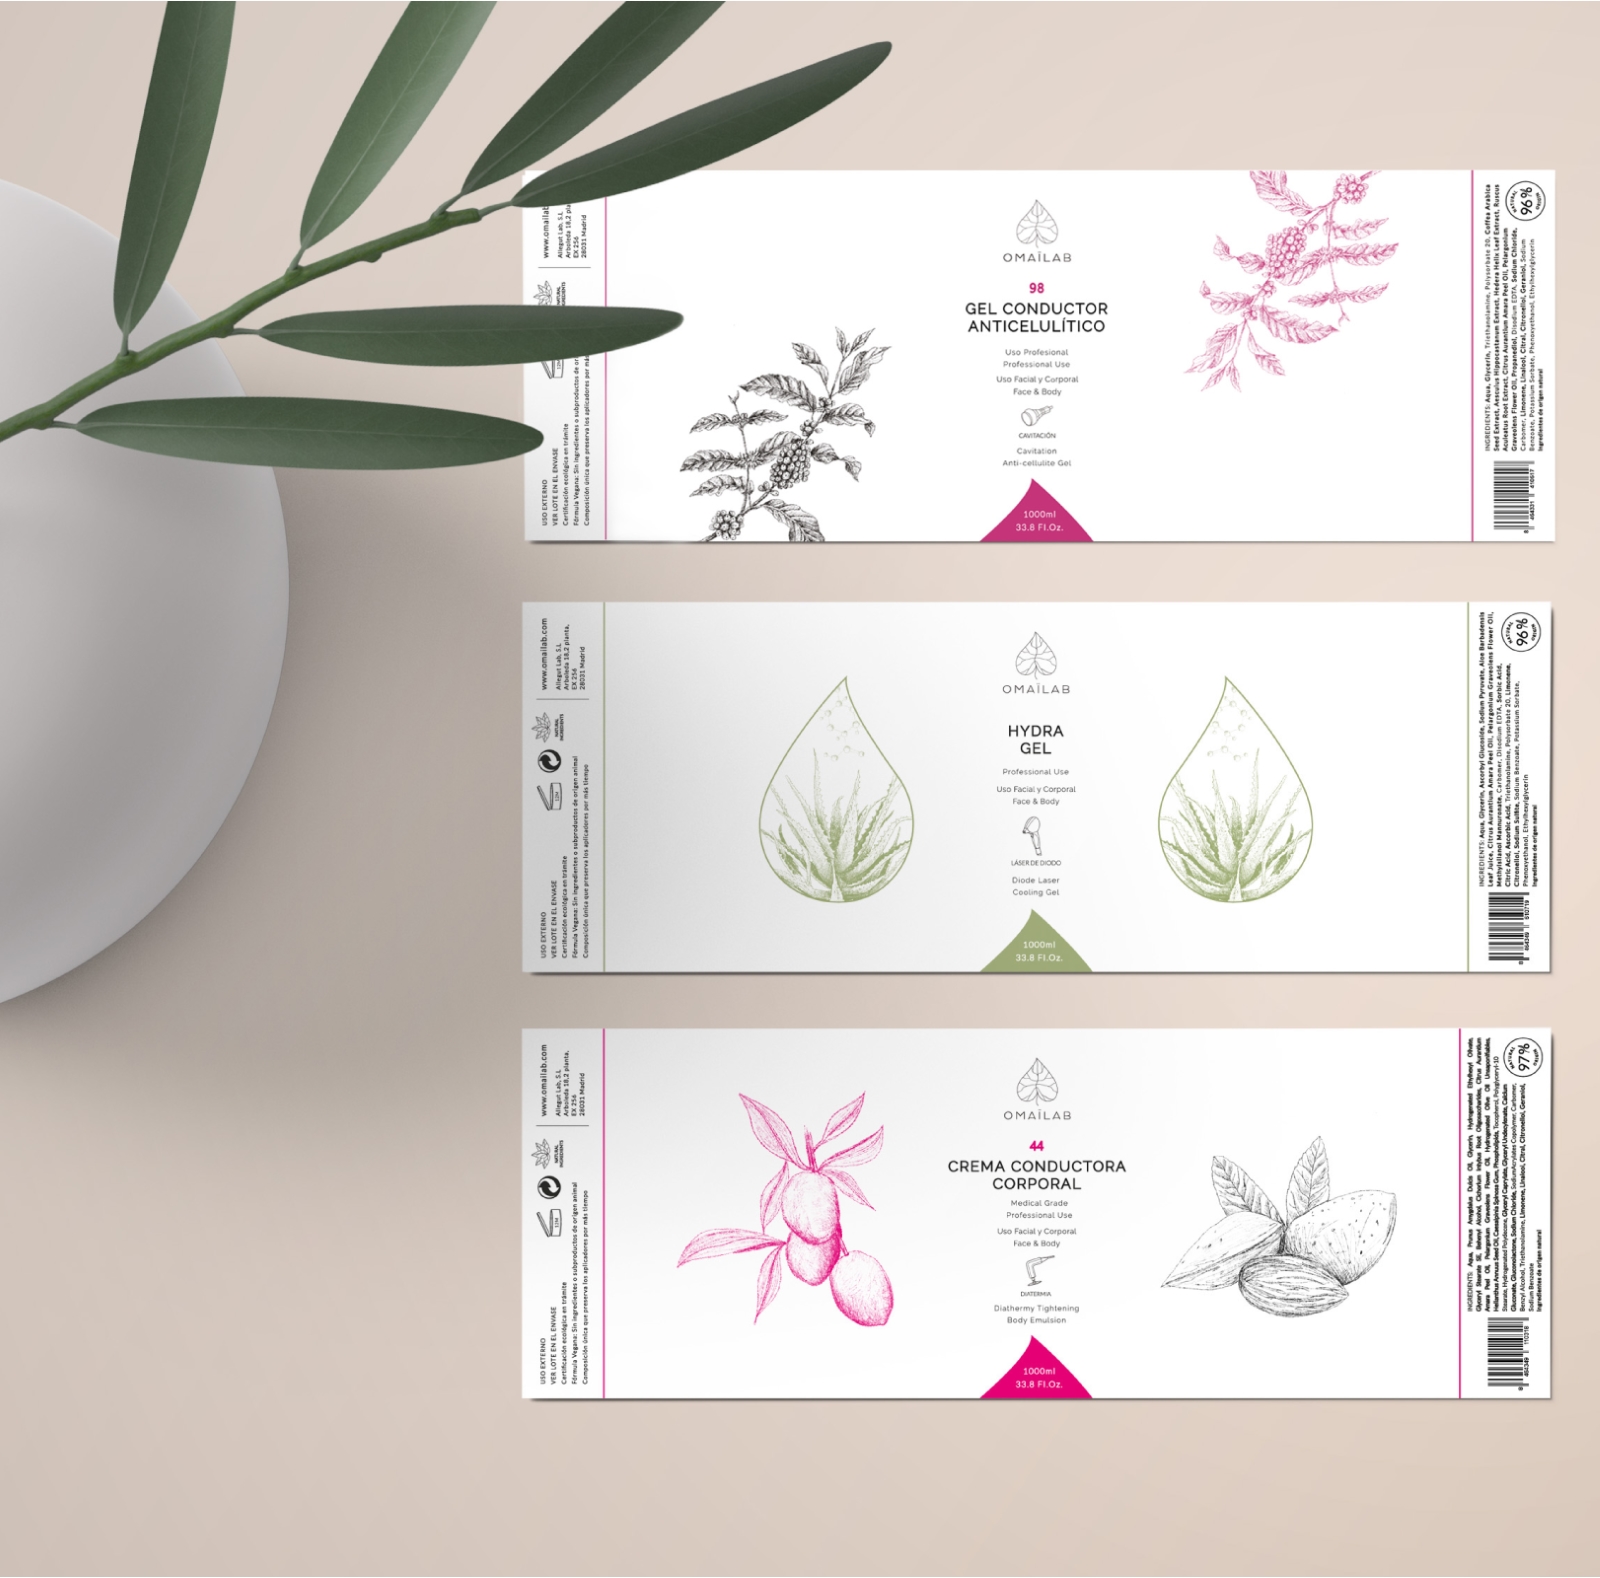 Omailab Serdivergente marketing cosmético diseño packaging